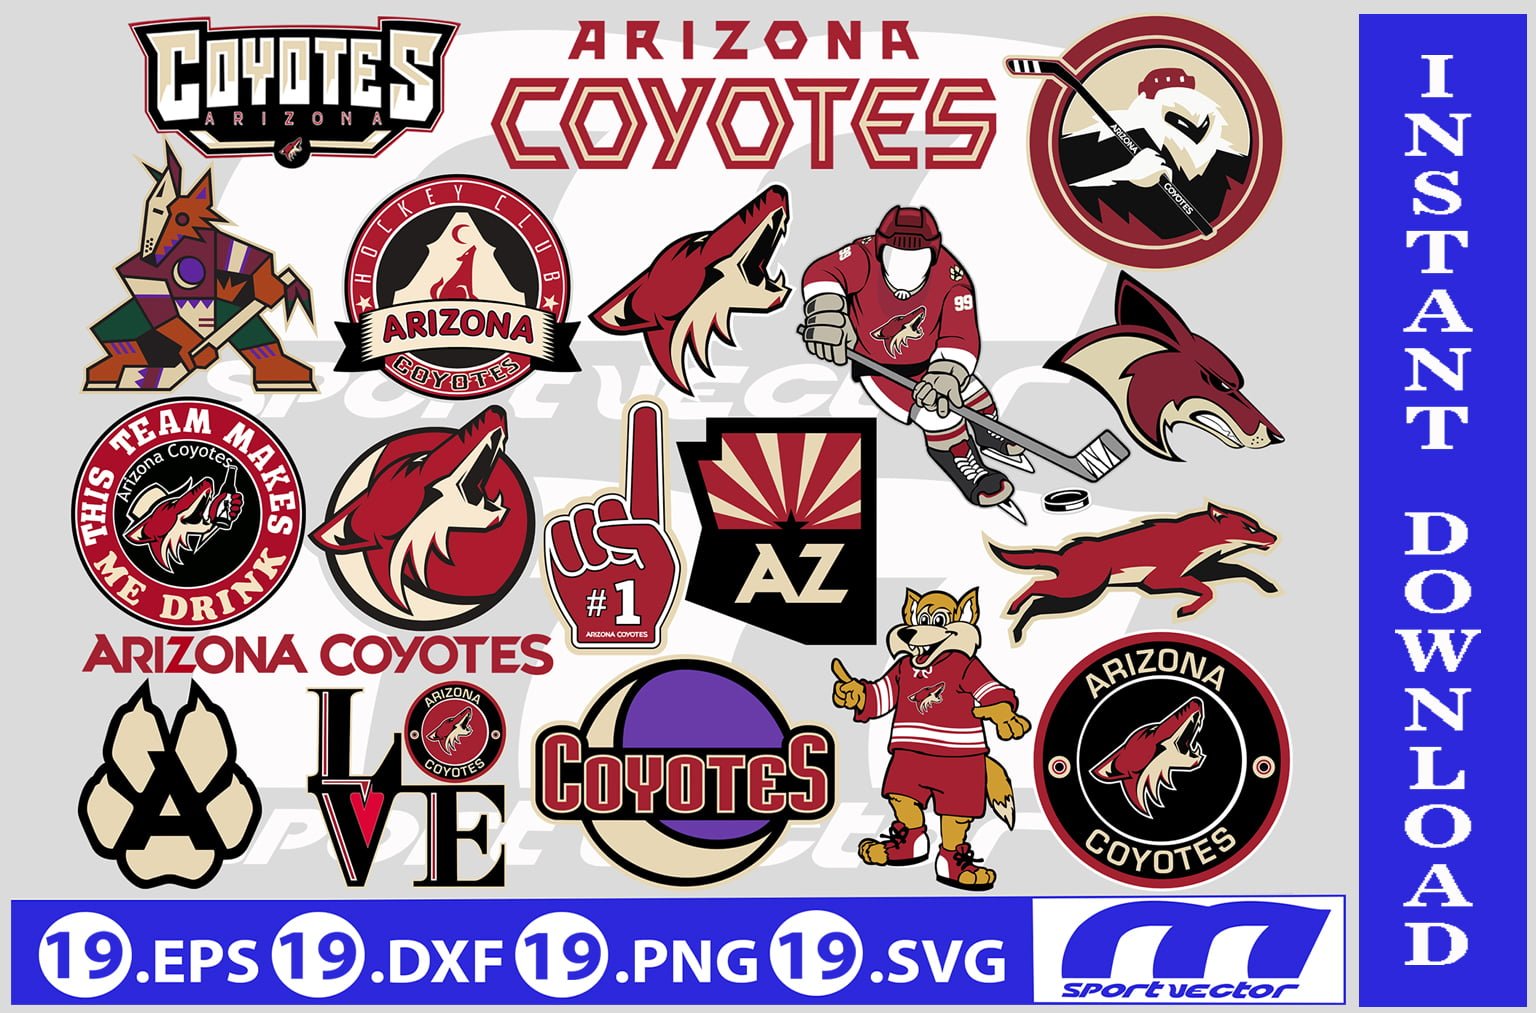 Arizona Coyotes: The History of the Logo